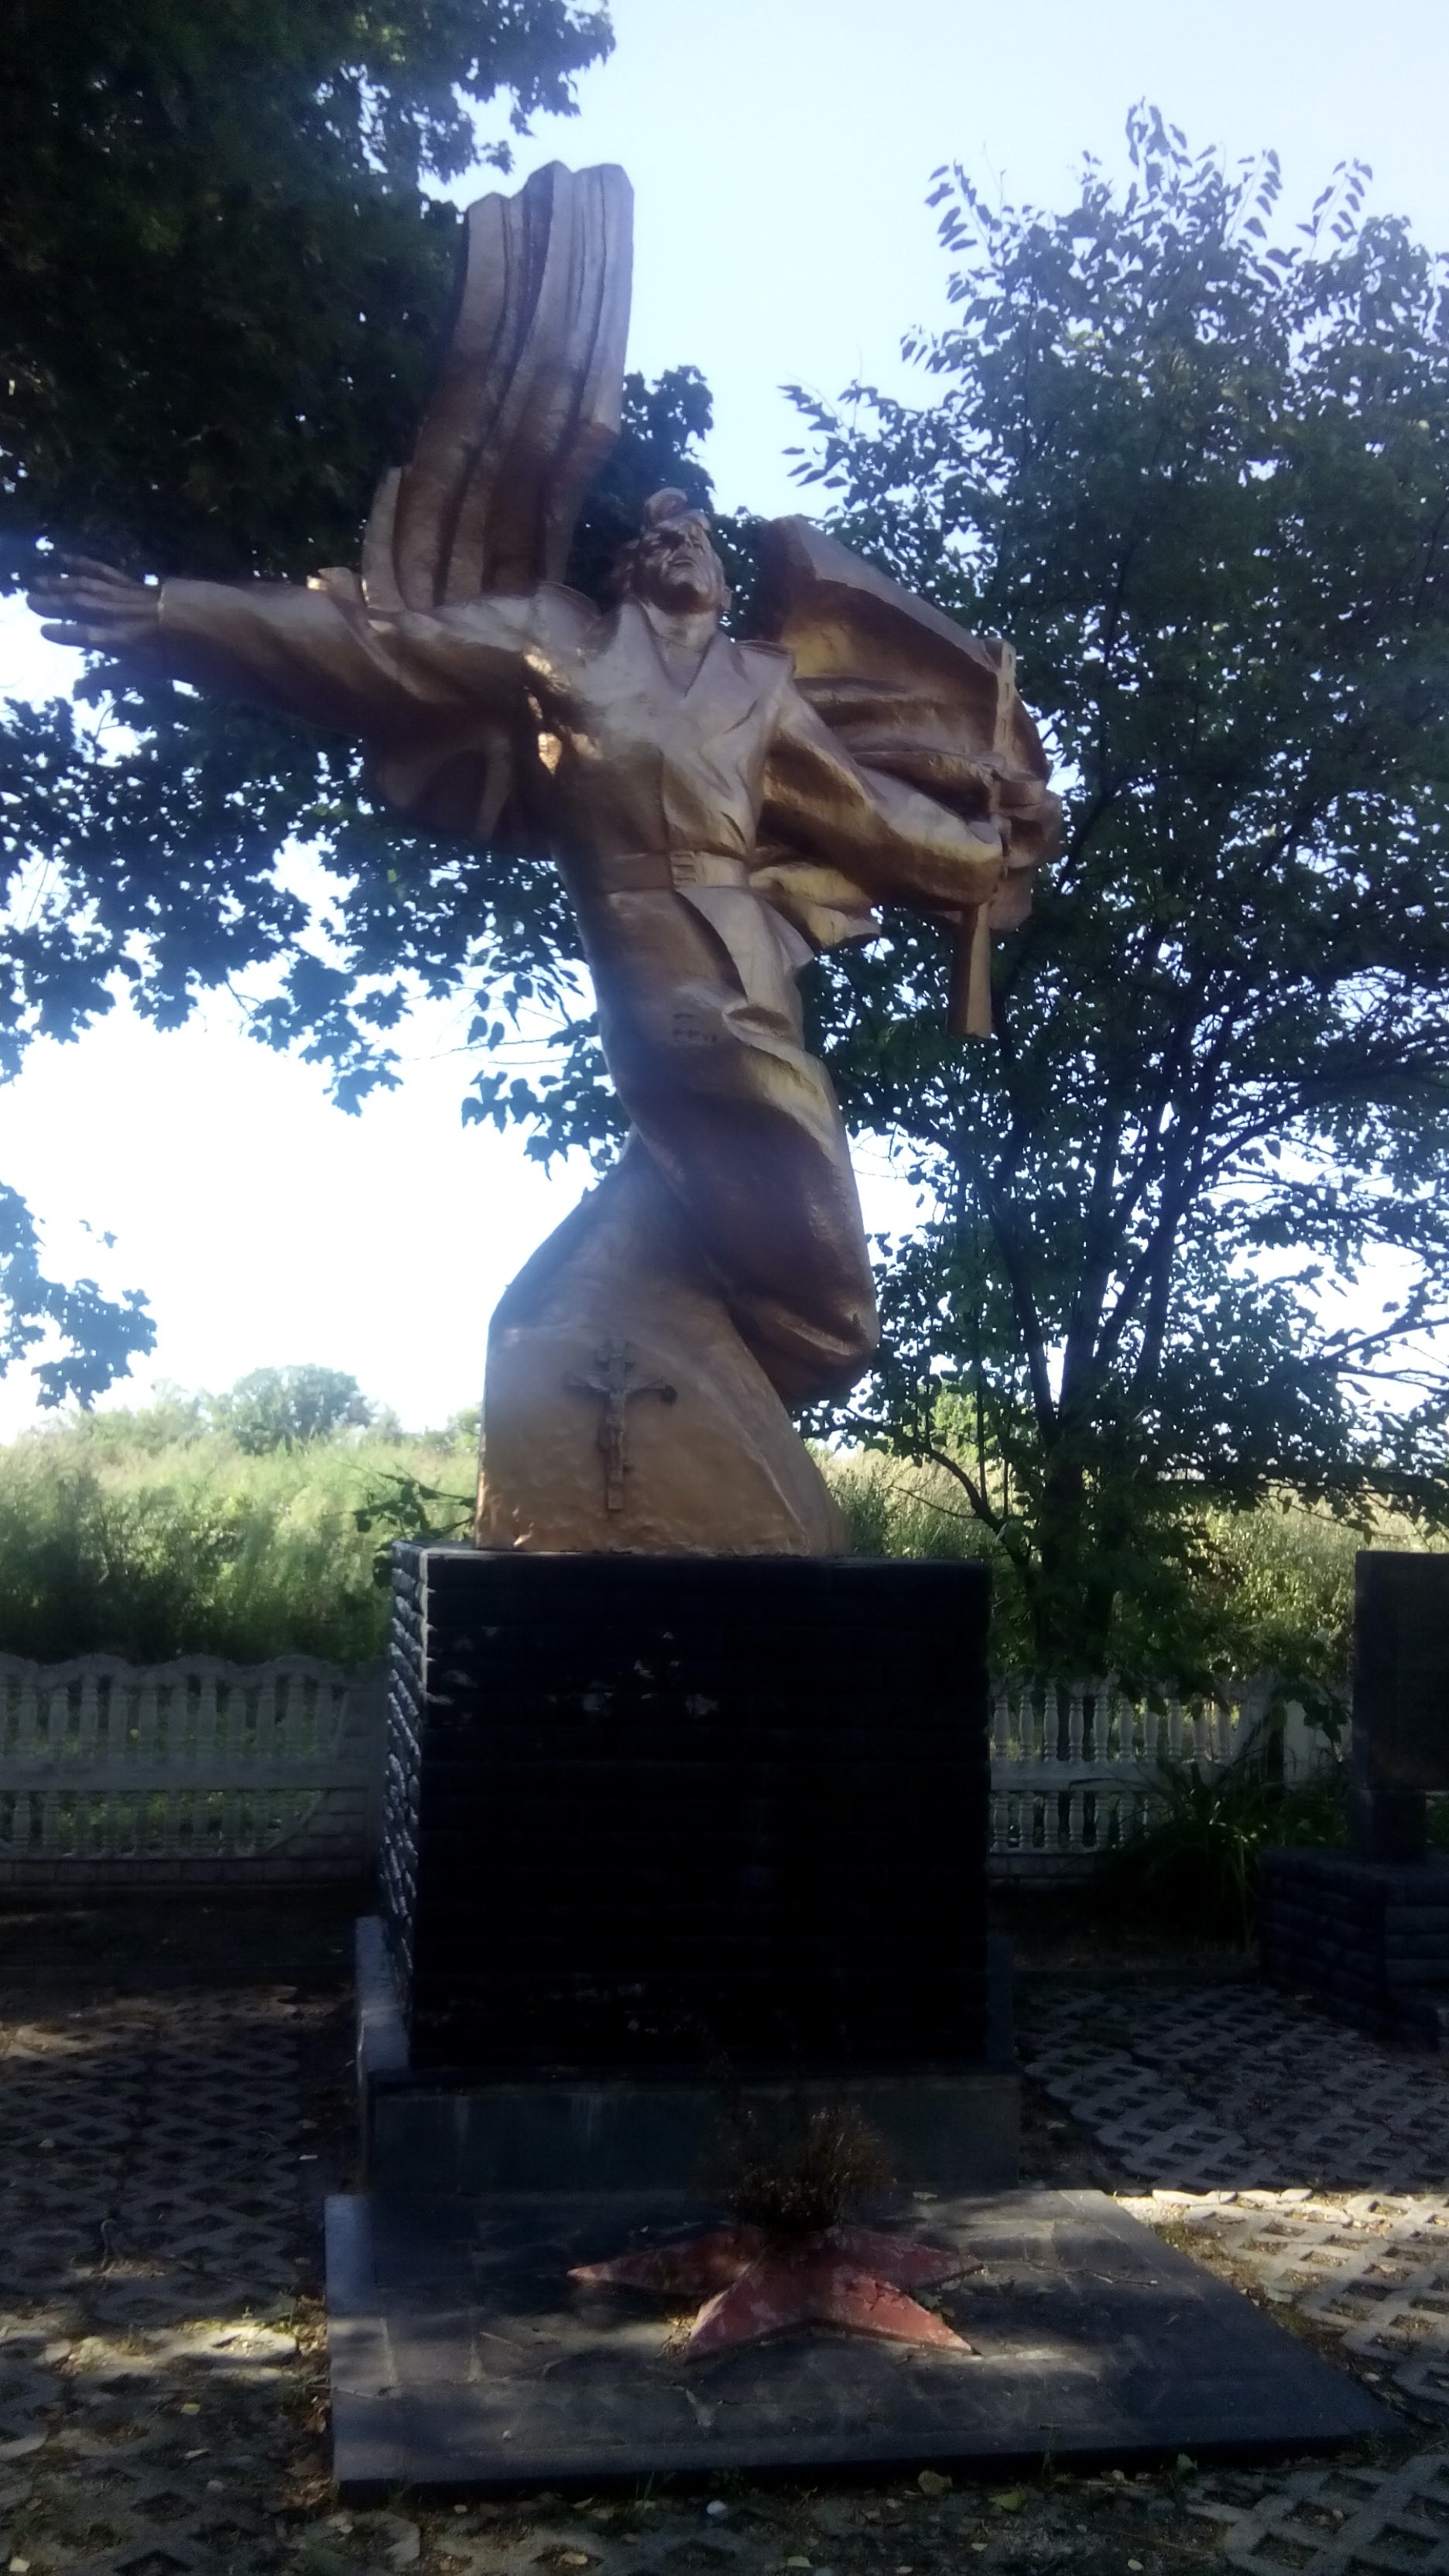 Мемориал в центре с. Вчерайше Ружинского района